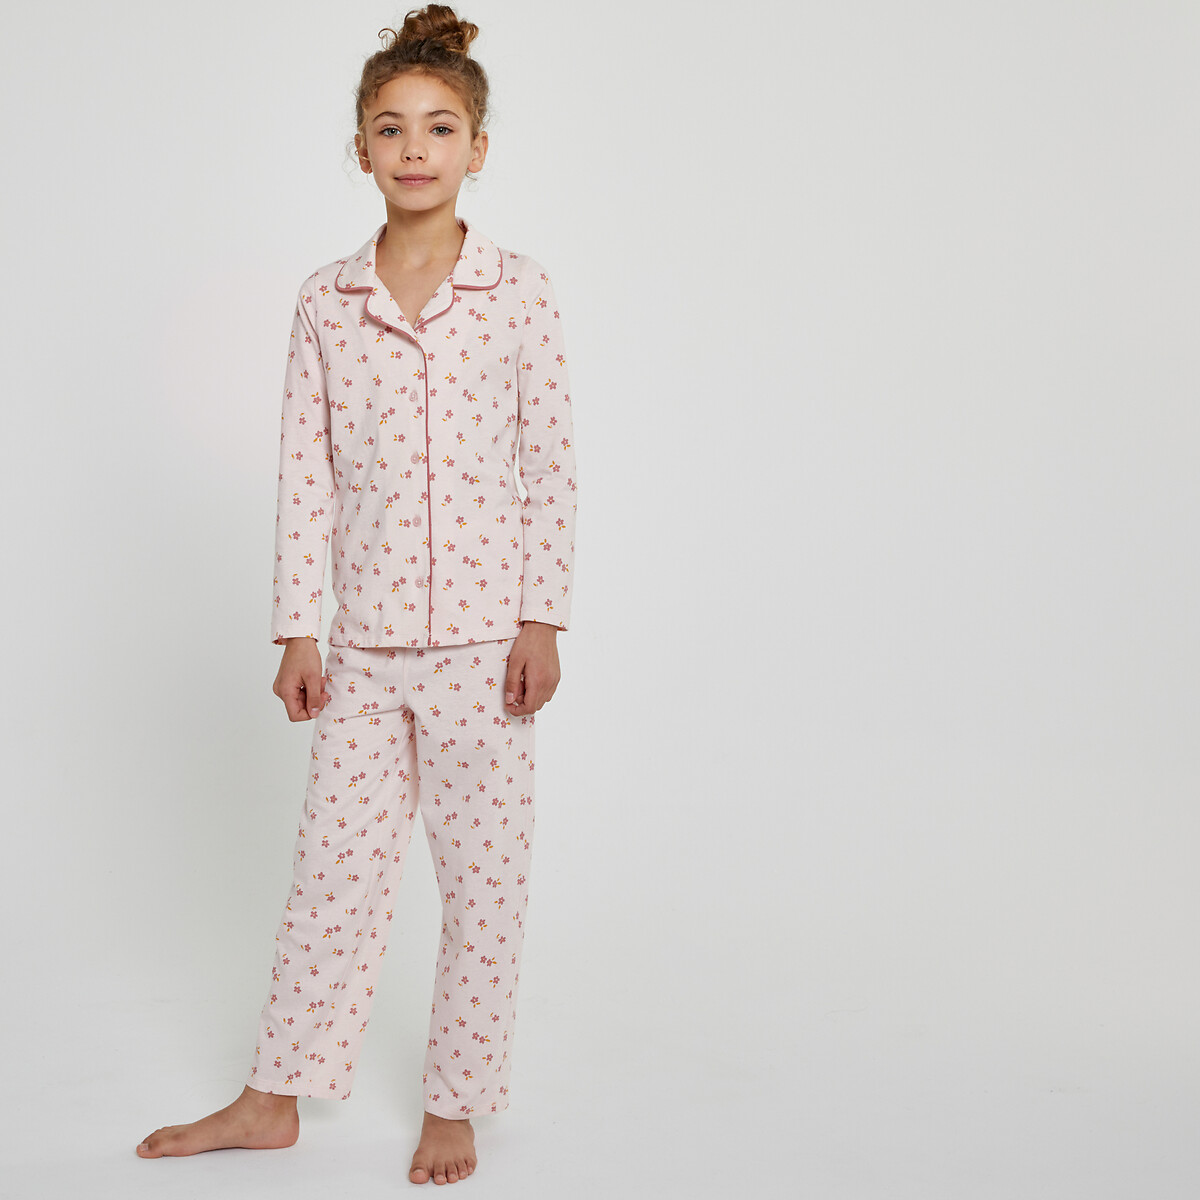 Пижама свободная с цветочным принтом 10 лет - 138 см розовый пижама с шортами 10 лет 138 см бежевый